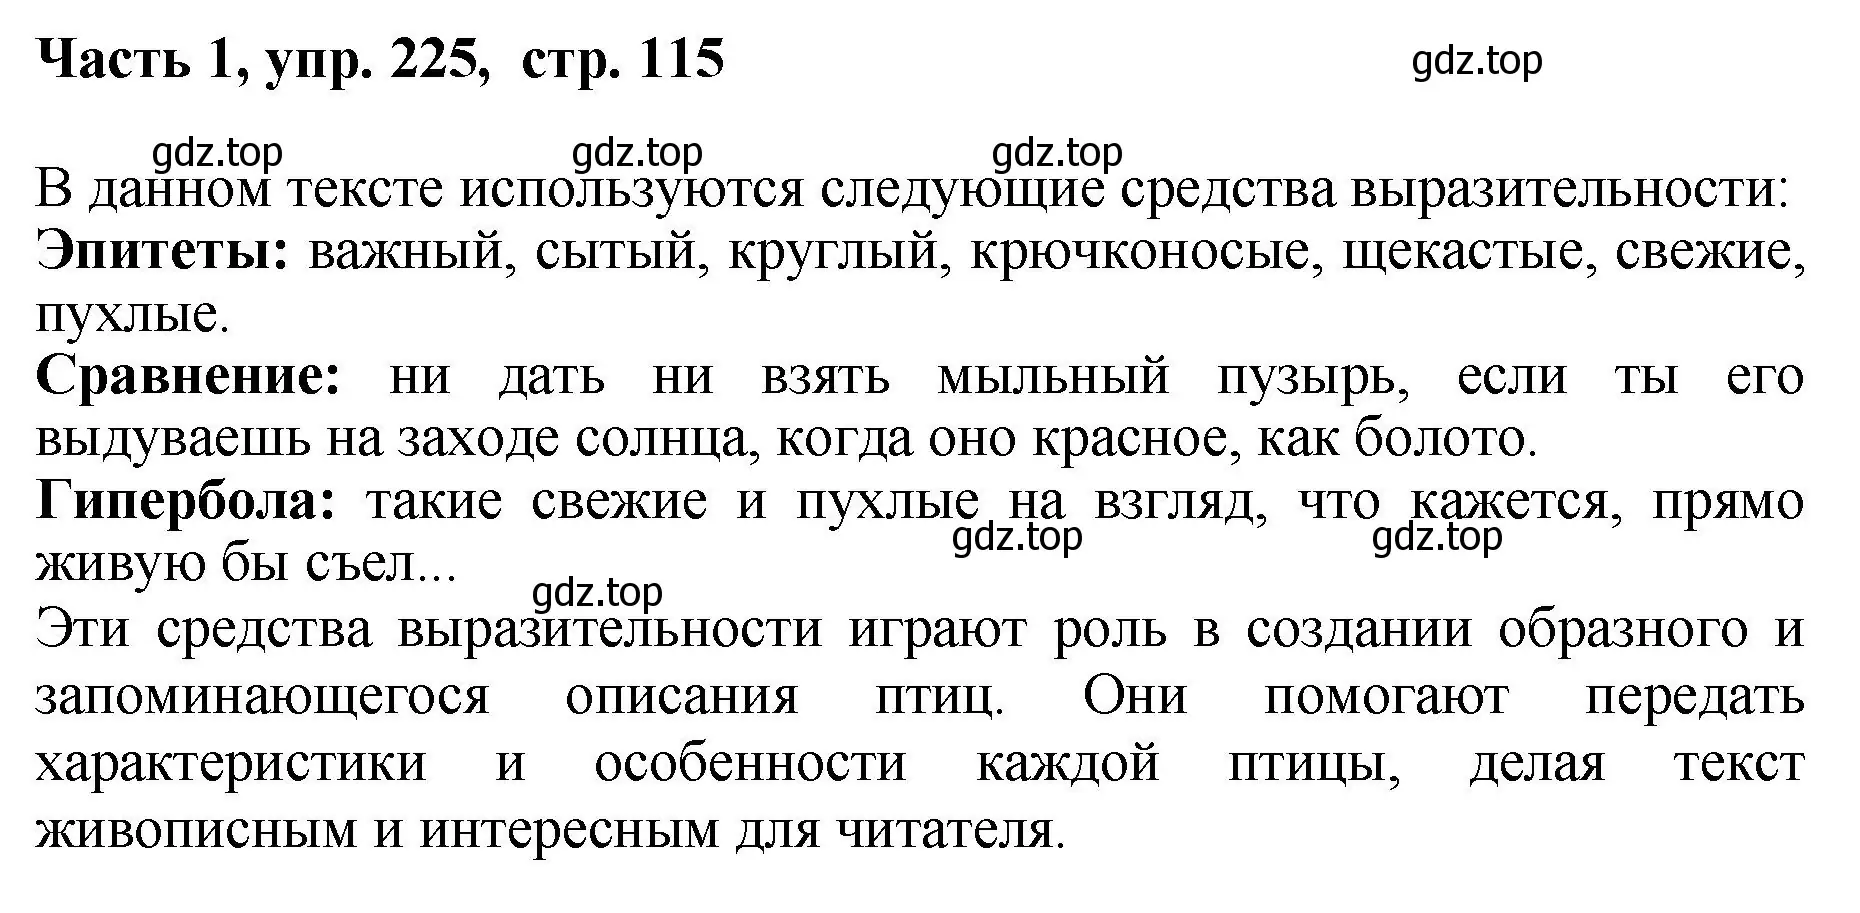 Решение номер 225 (страница 115) гдз по русскому языку 6 класс Баранов, Ладыженская, учебник 1 часть